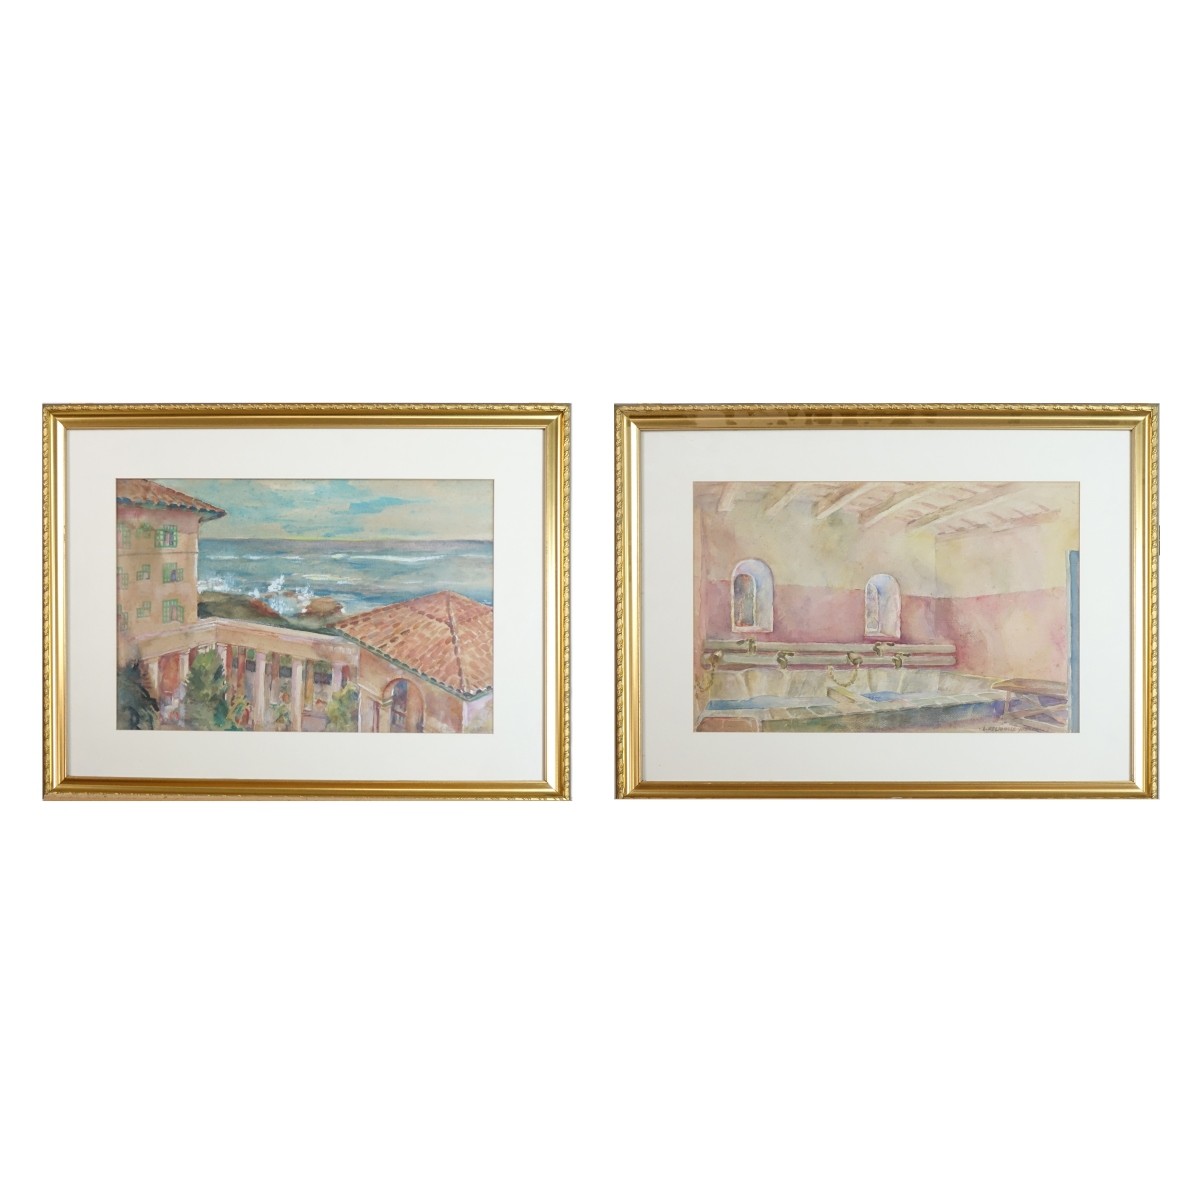 Two Leo Helmholz Junker (1880 - 1972) Watercolors